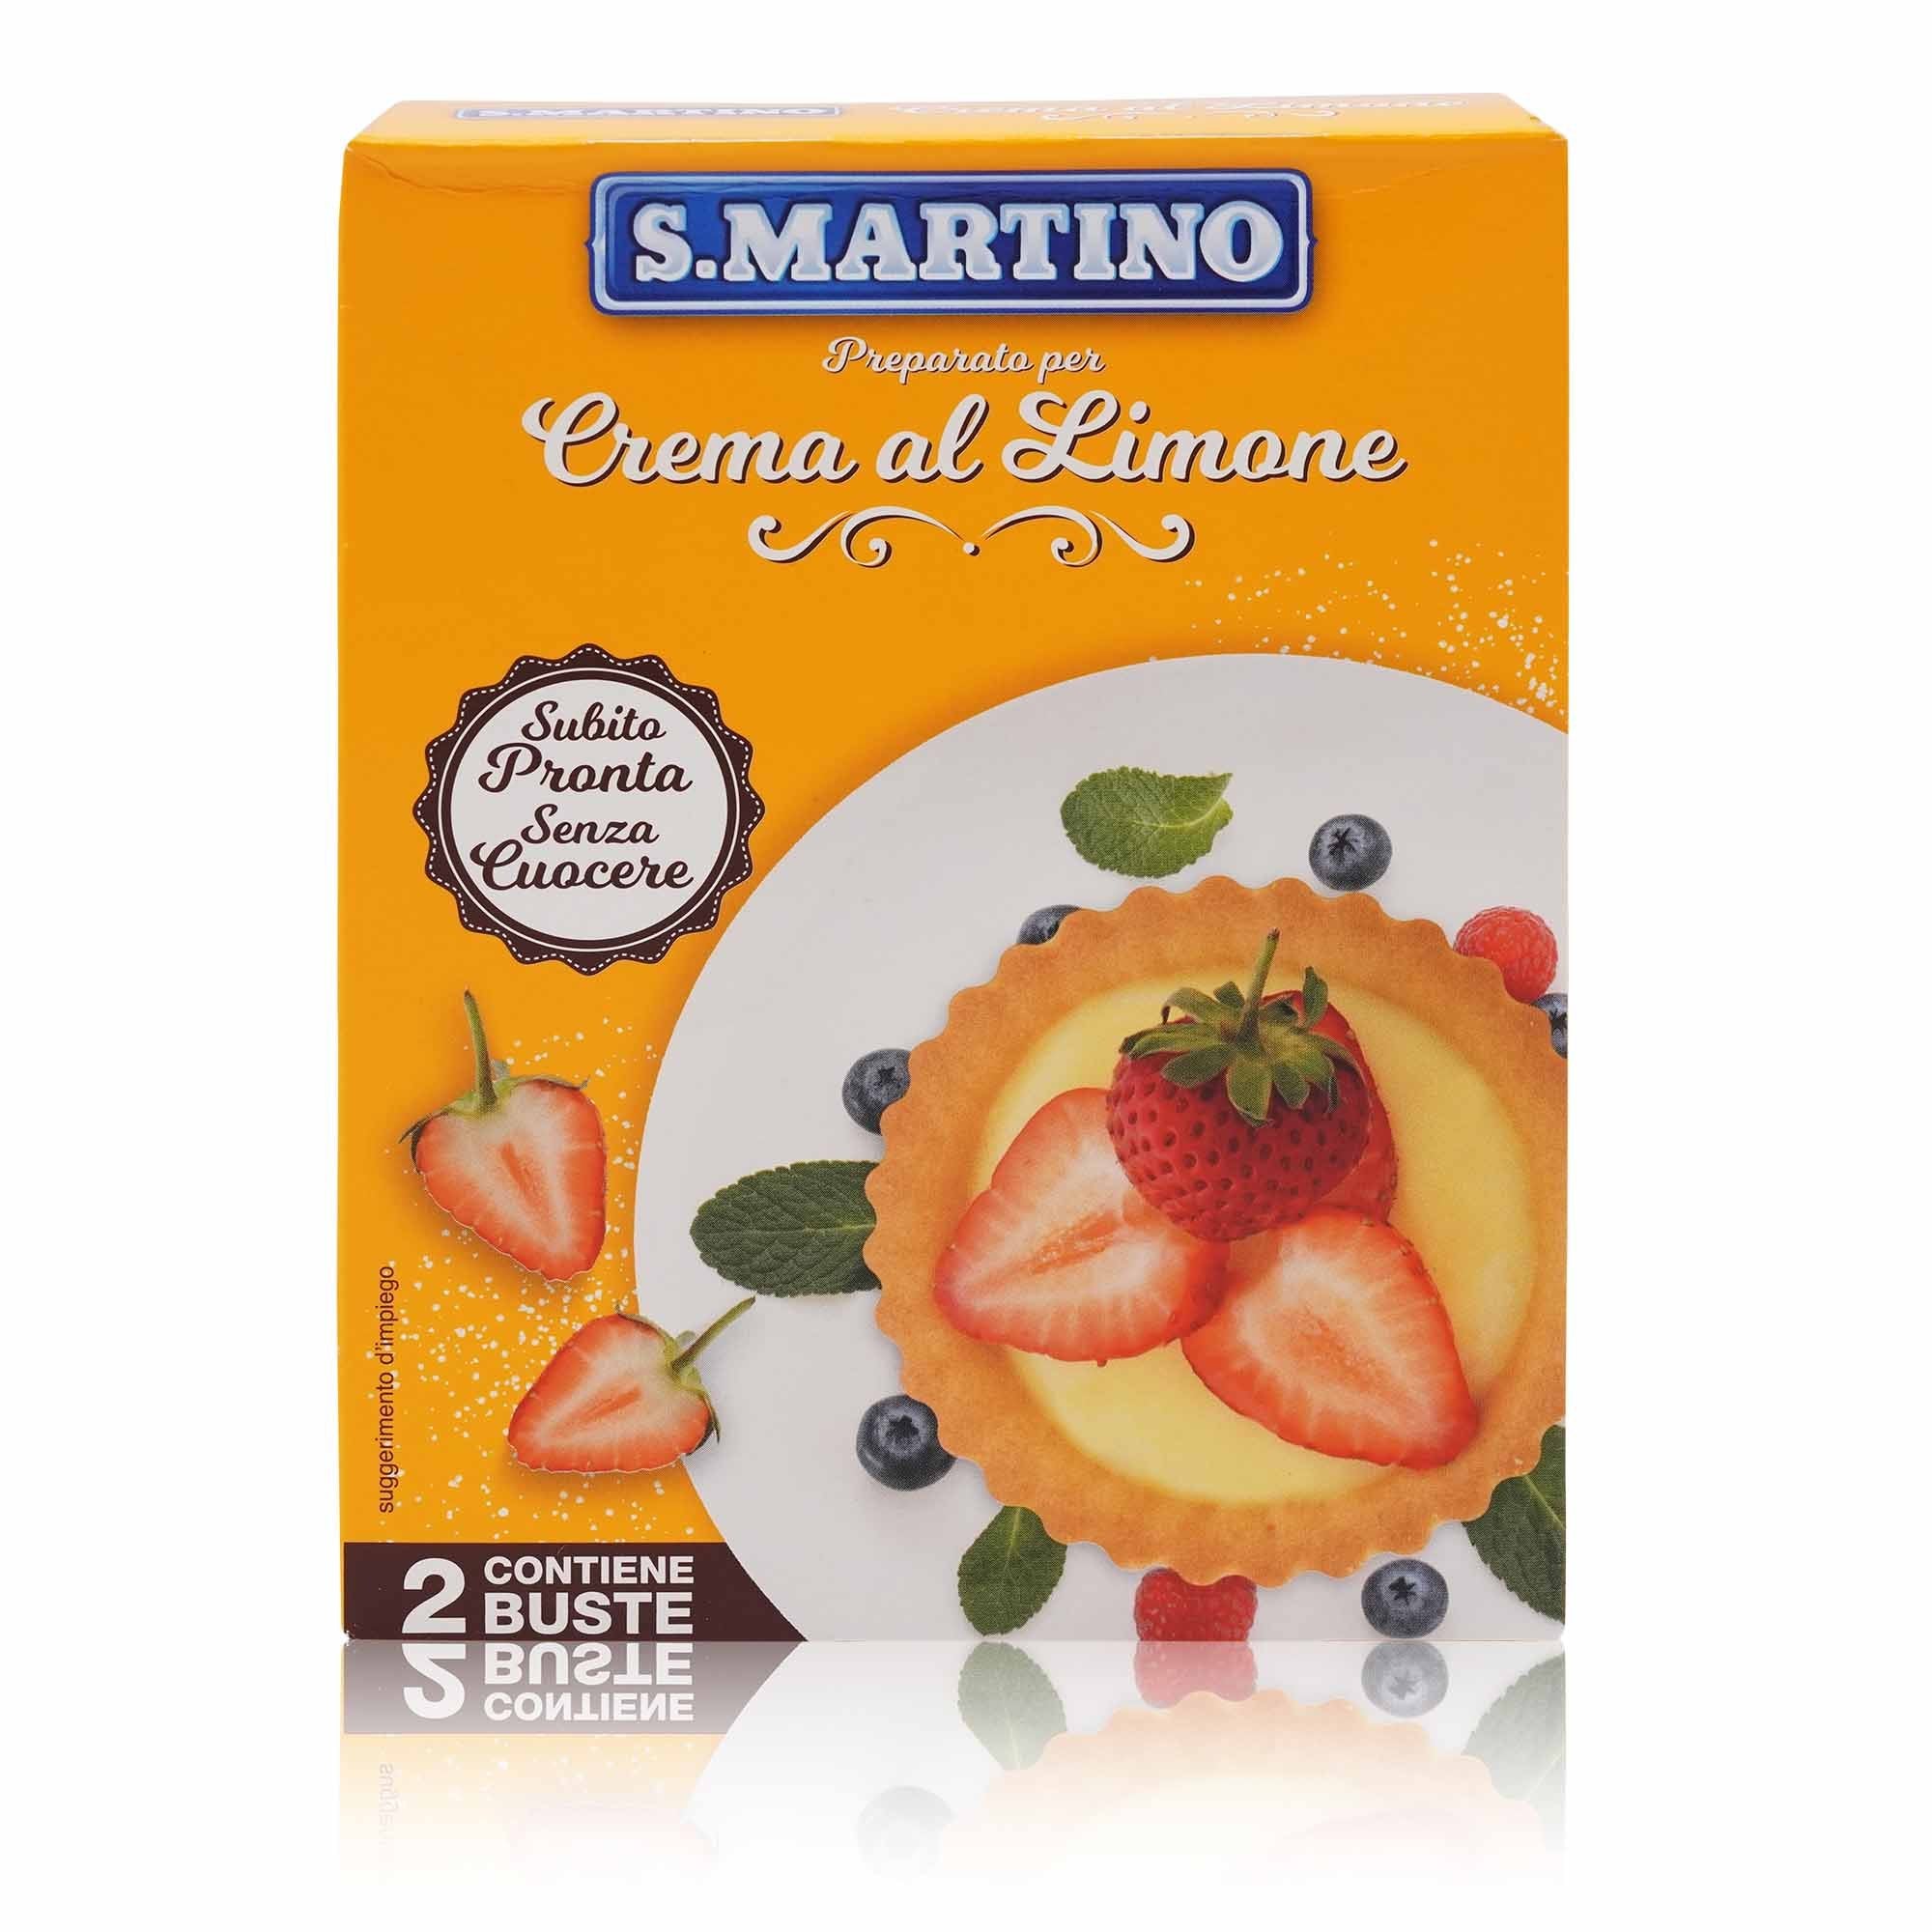 S.MARTINO Preparato Crema al Limone – Backmischung Zitronencreme - 0,140kg - italienisch-einkaufen.de